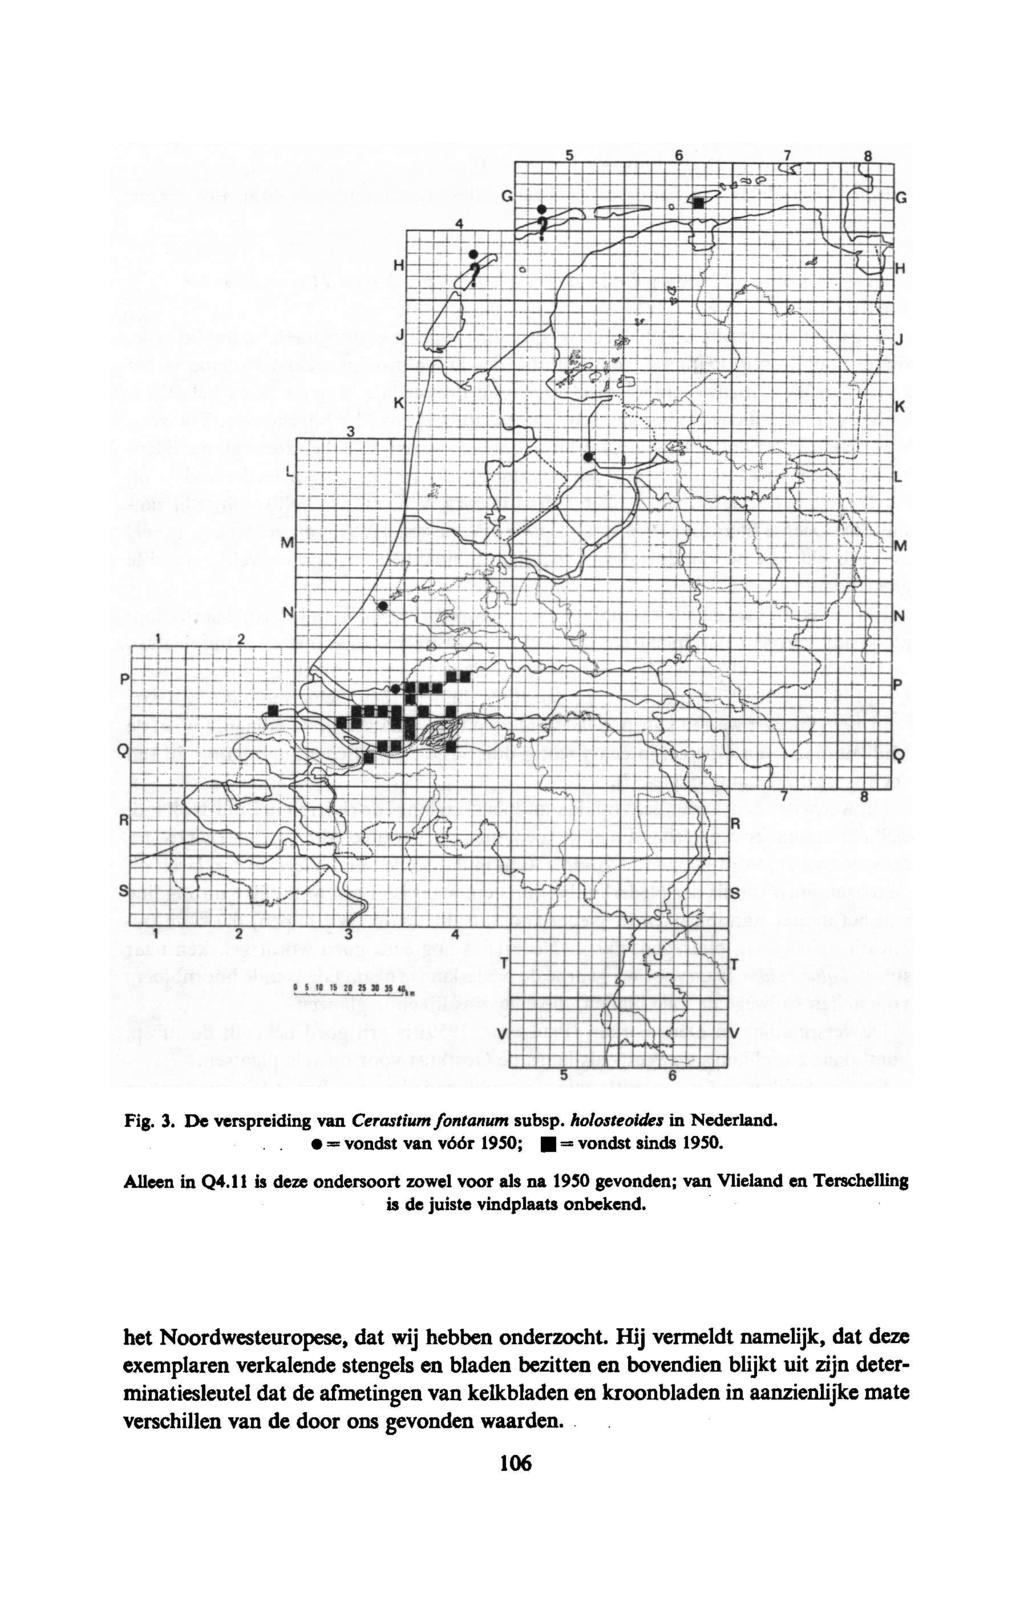 Fig. 3. De verspreiding van Cerastium fontanum subsp. holosteoides in Nederland. = vondst van vóór 1950; = vondst sinds 1950. Alleen in Q4.